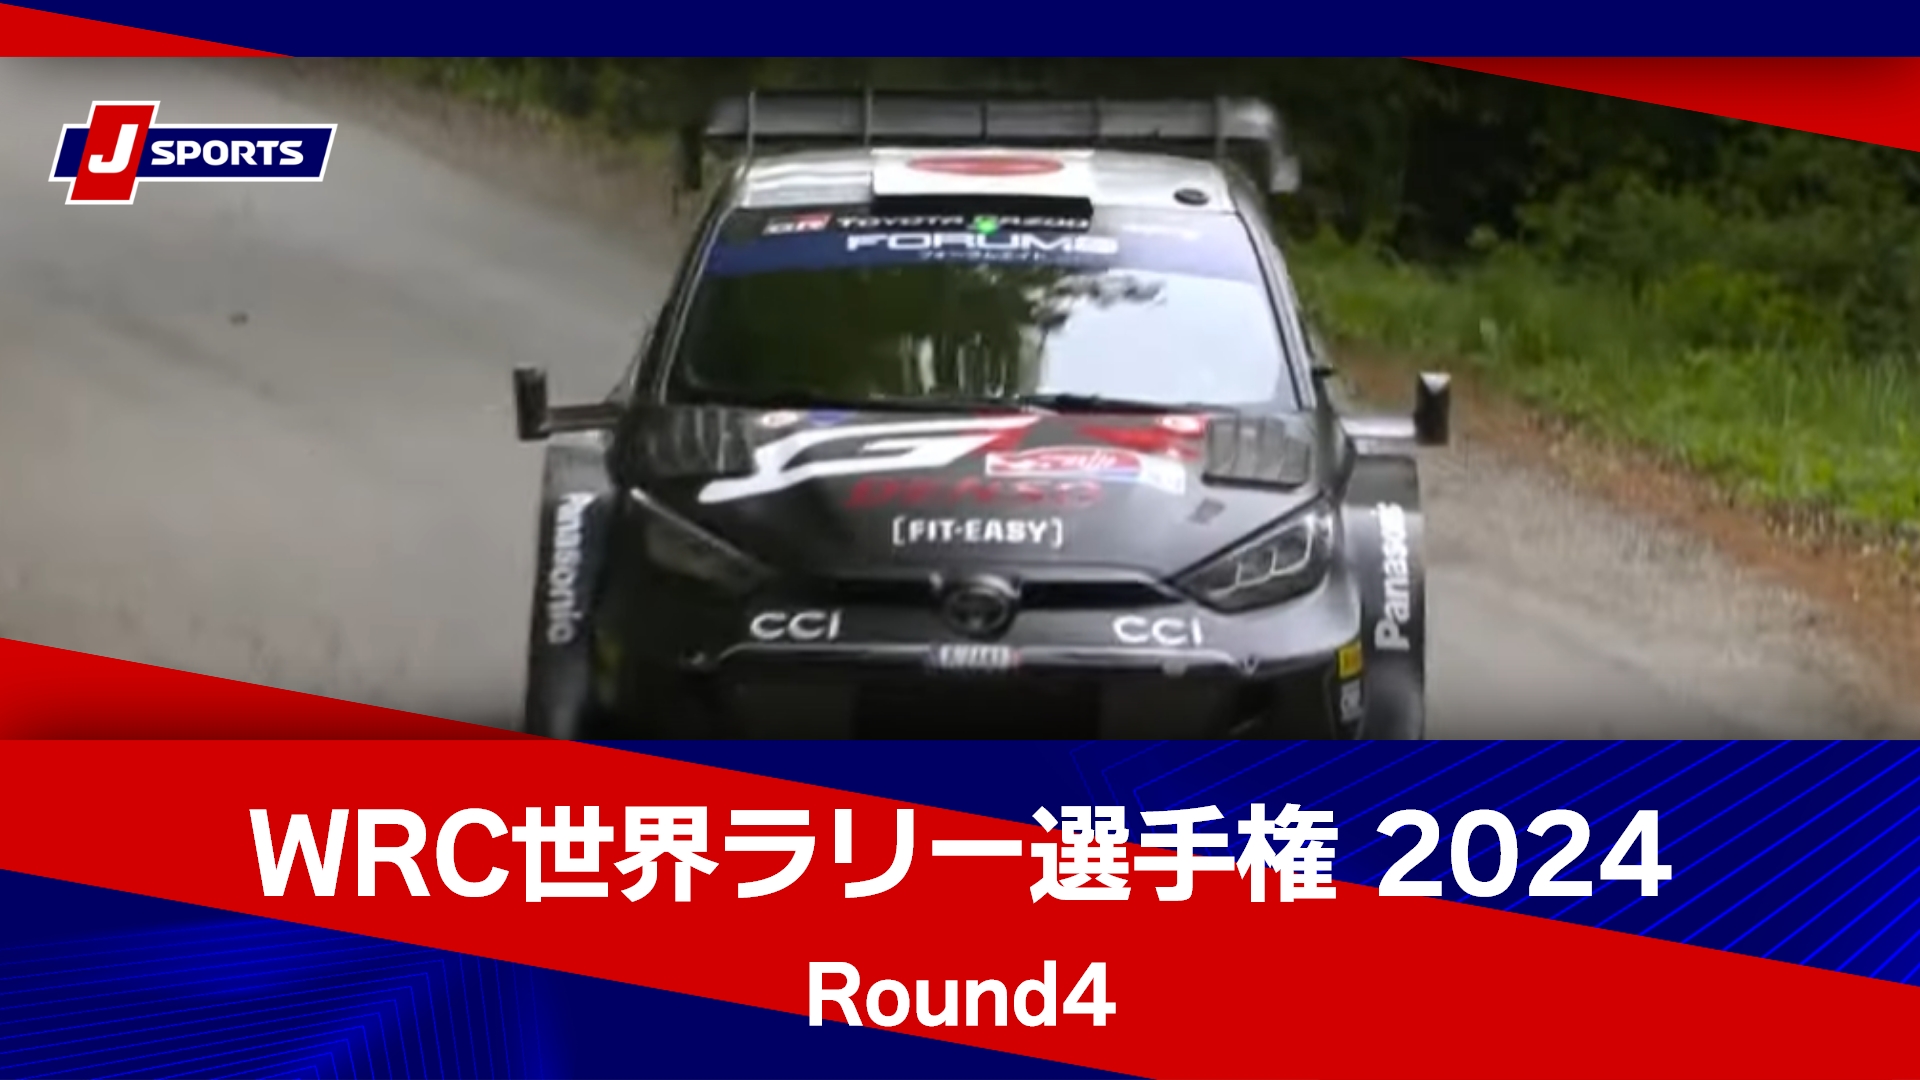 【ハイライト】WRC世界ラリー選手権 2024 Round4 サファリ・ラリー・ケニア ライブステージ【SS15】